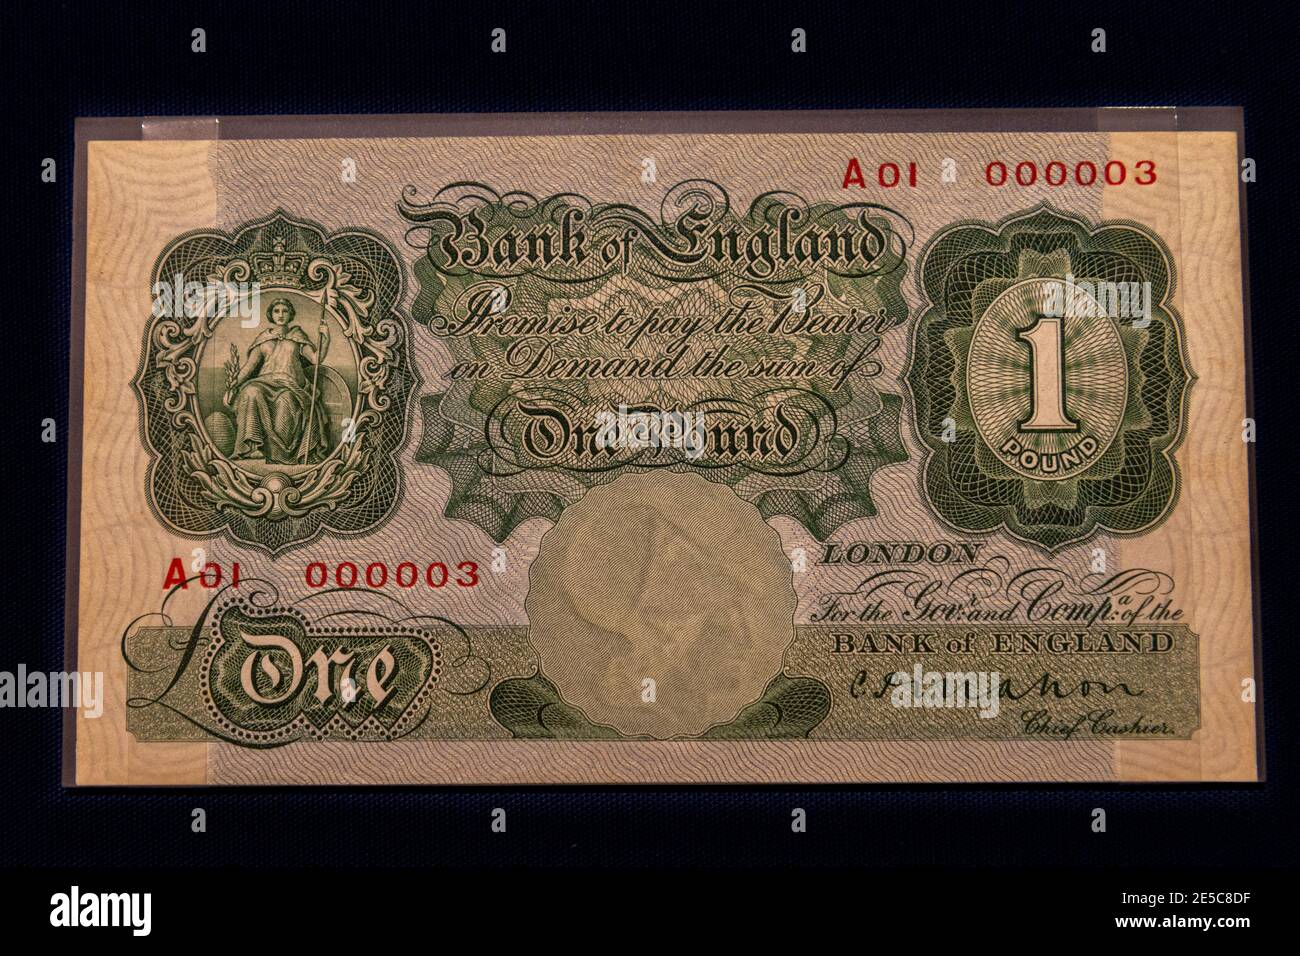 Die erste Bank von England hat £1 Noten (Mahon), die Money Gallery, Ashmolean Museum, Oxford, Großbritannien. Stockfoto